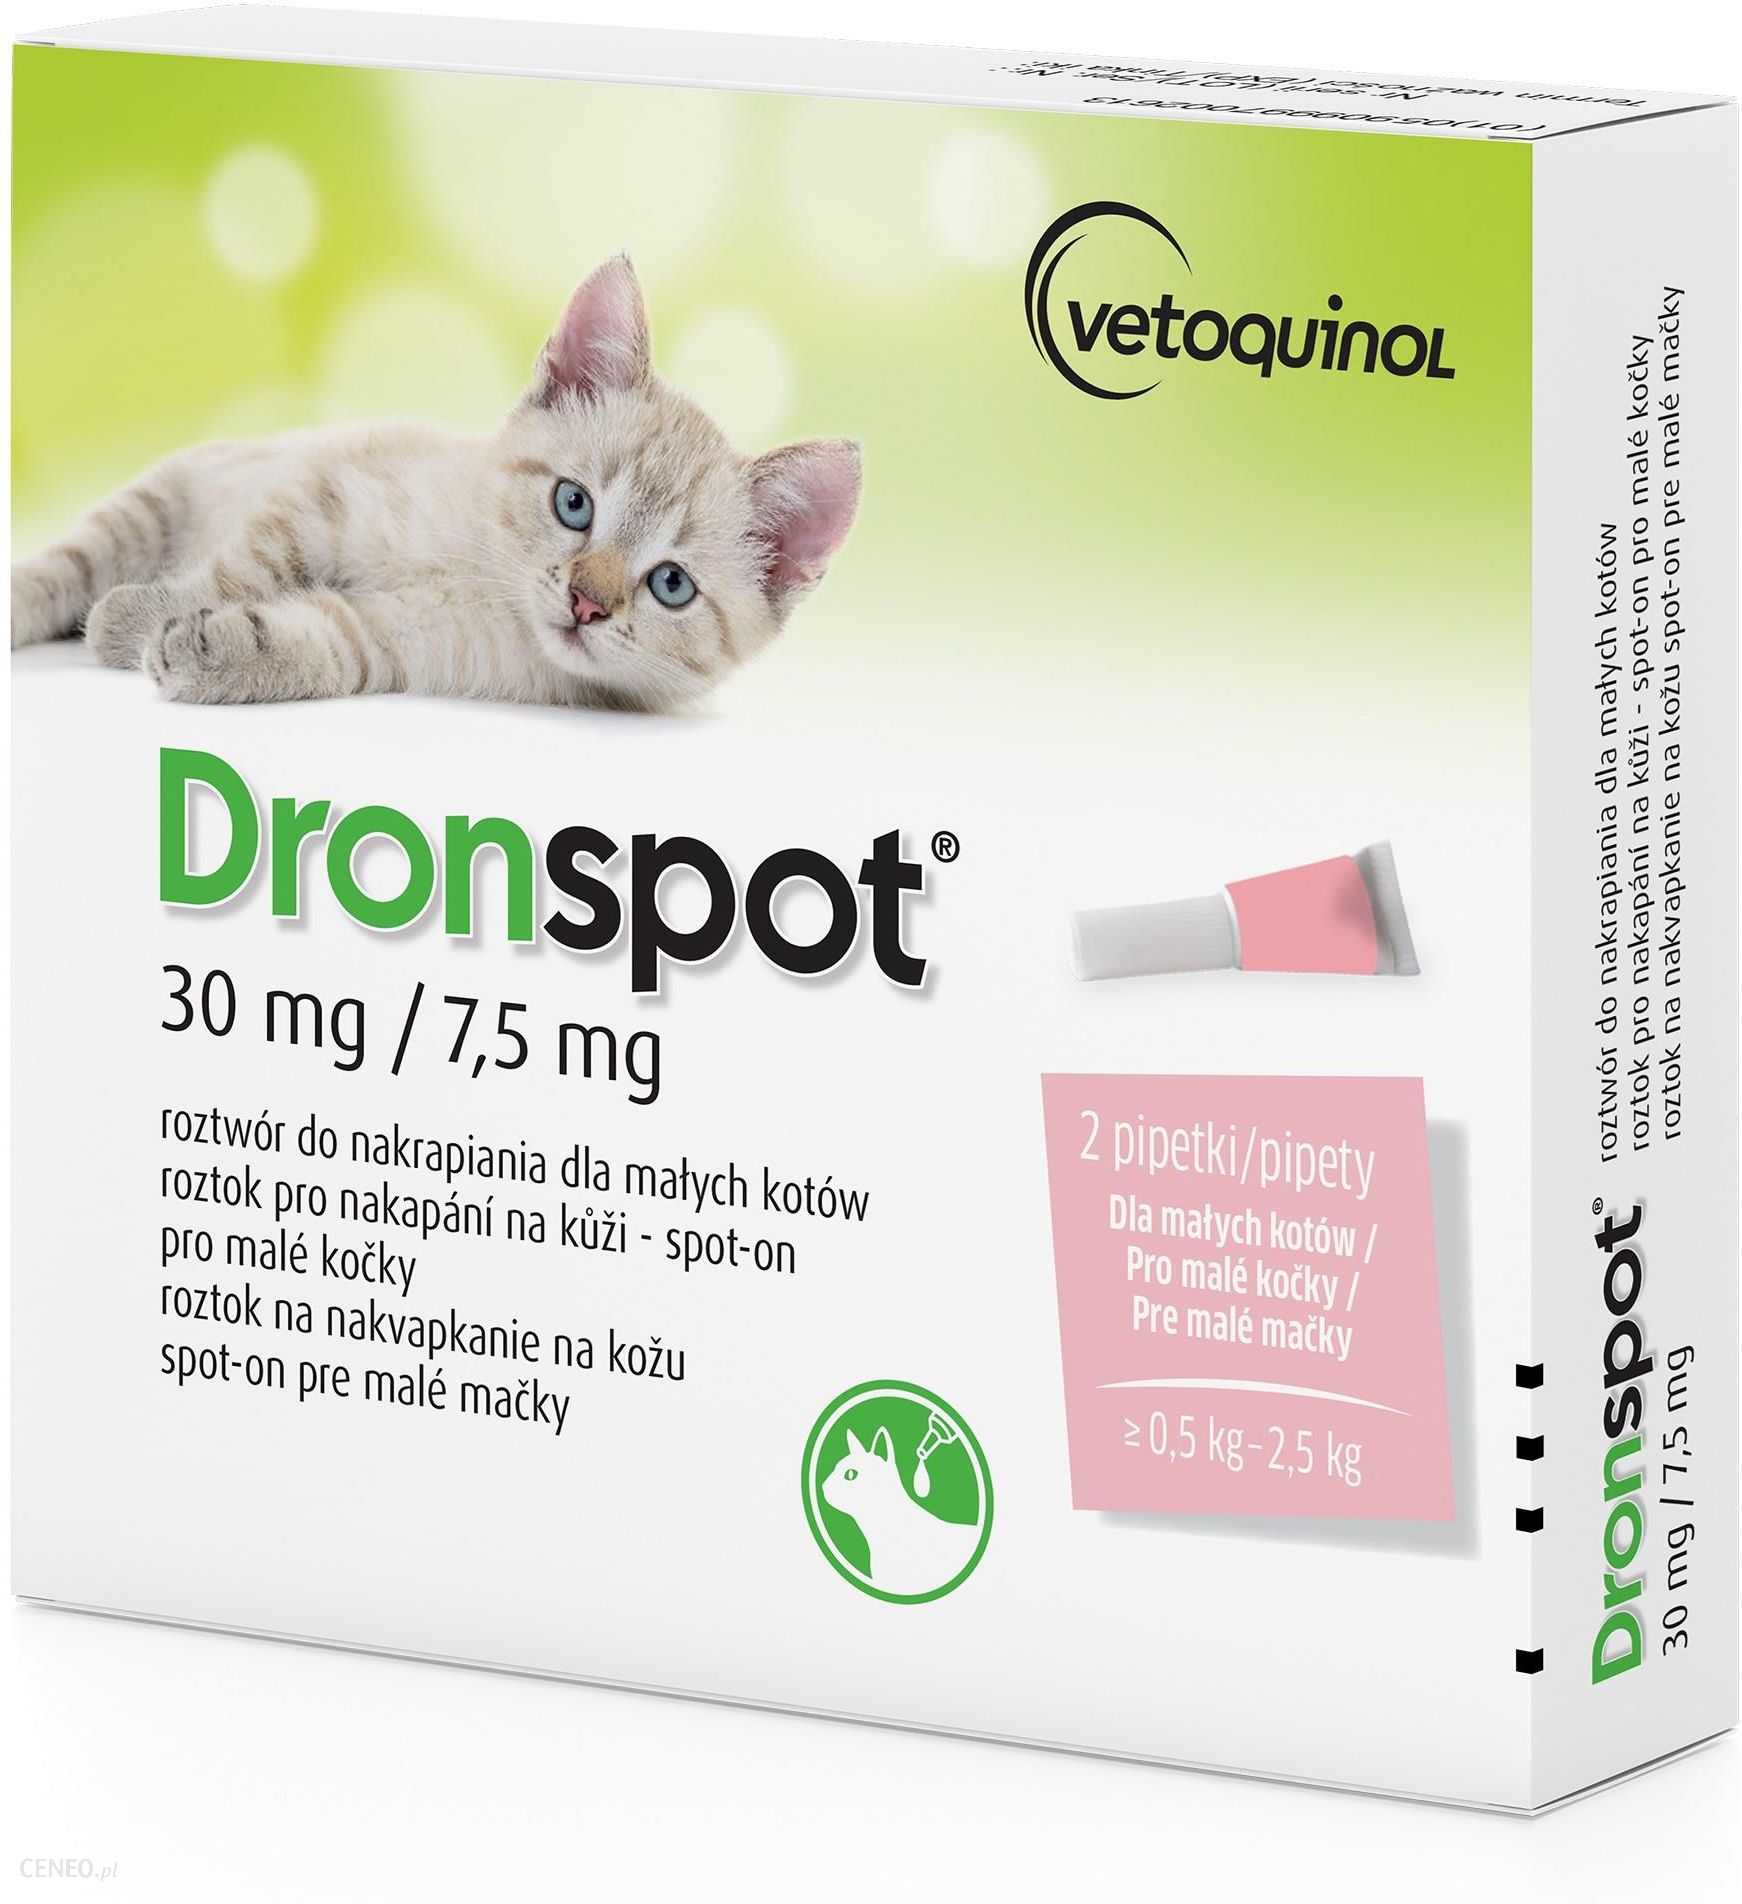 Vetoquinol Dronspot lek na odrobaczanie dla małych kotów 30mg/7,5mg